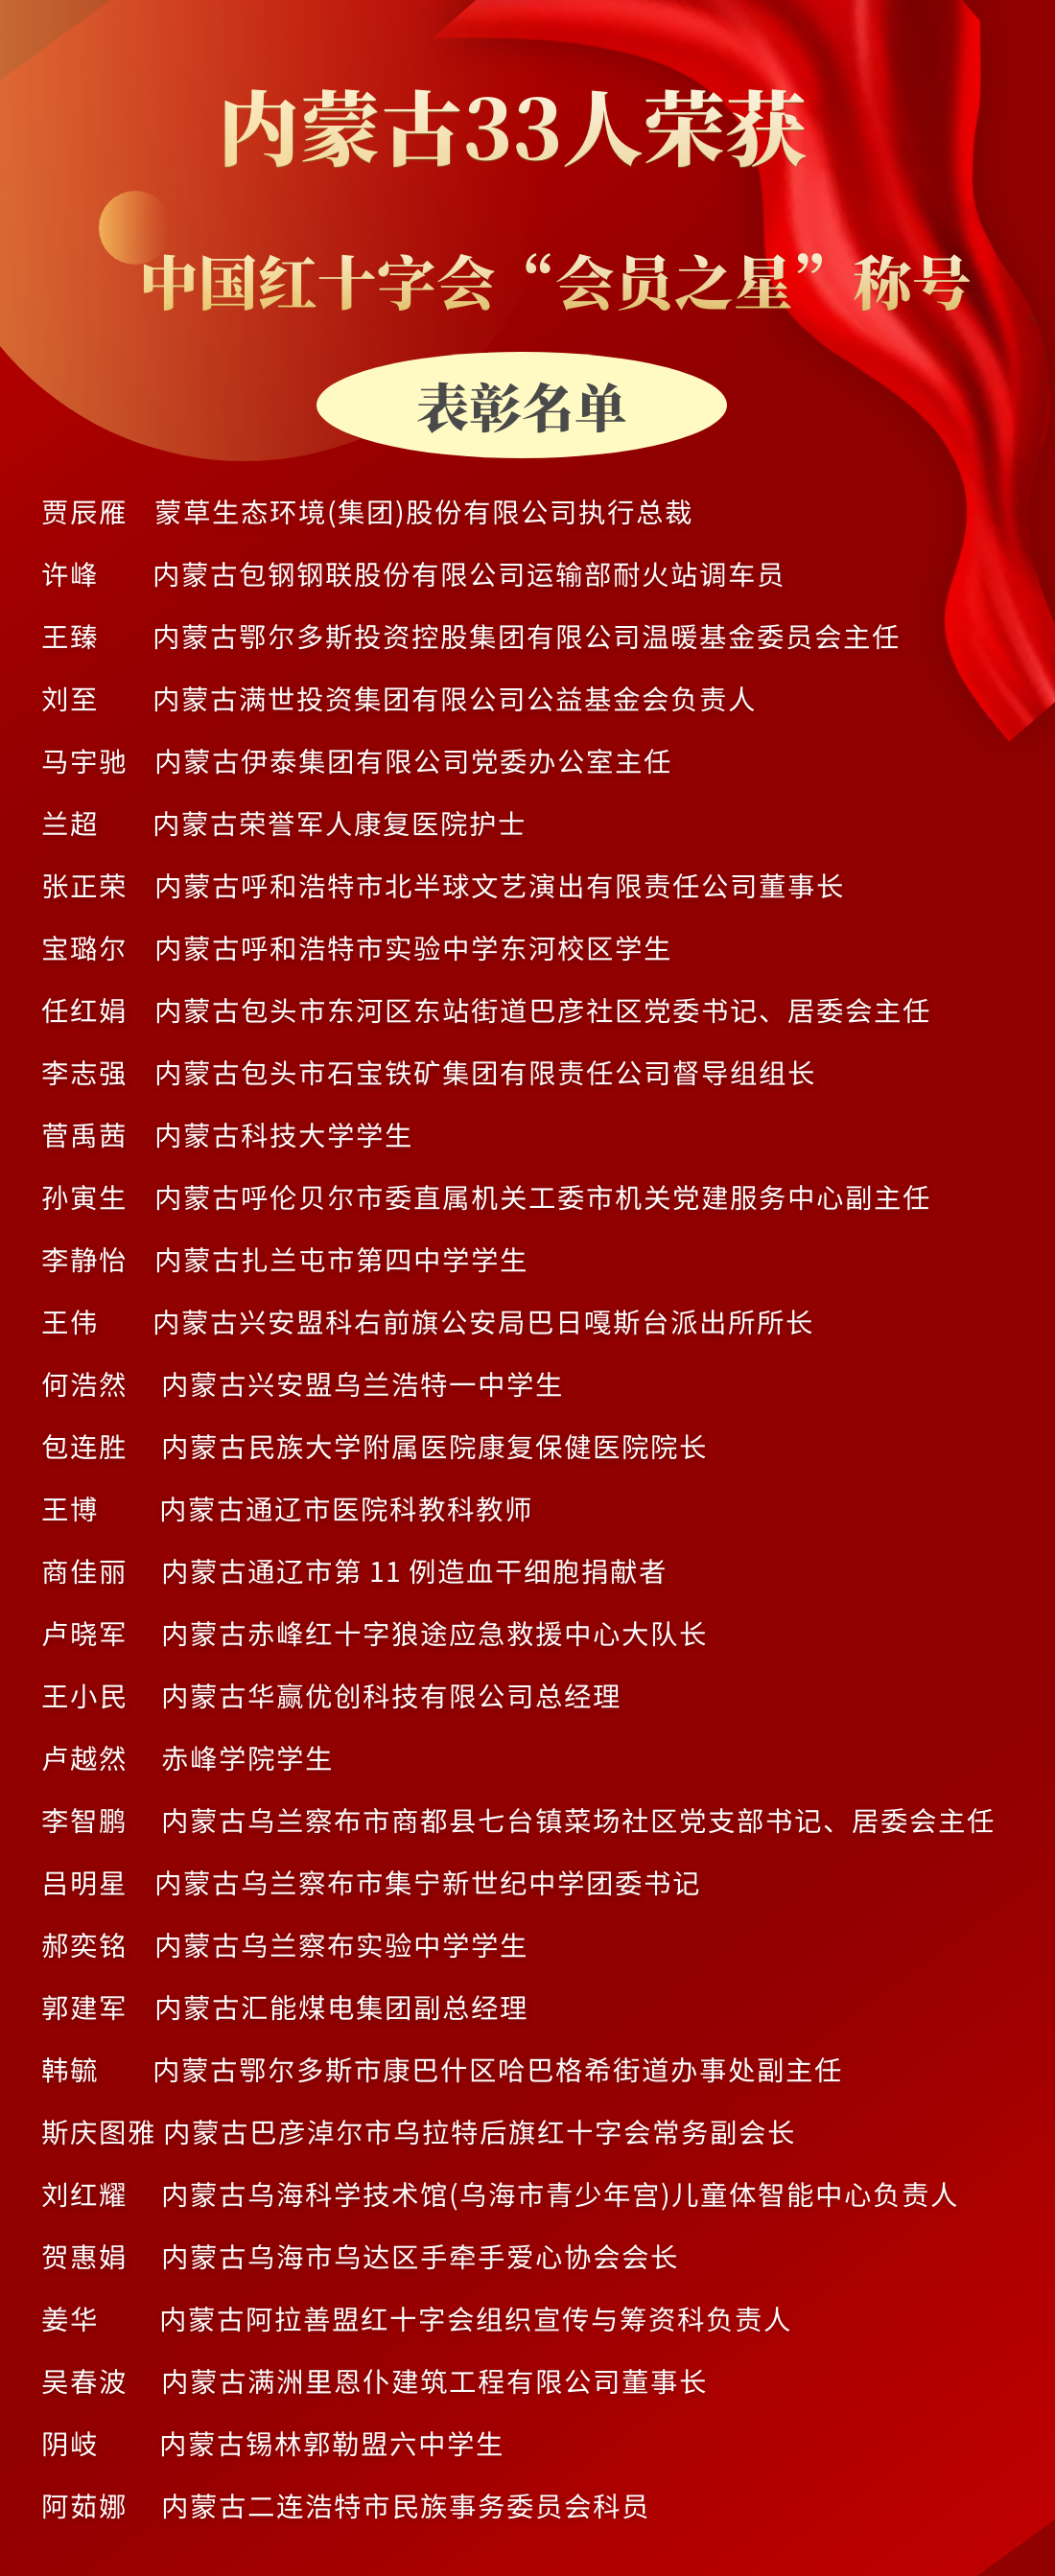 内蒙古又有33人荣获中国红十字会“会员之星”称号(图1)